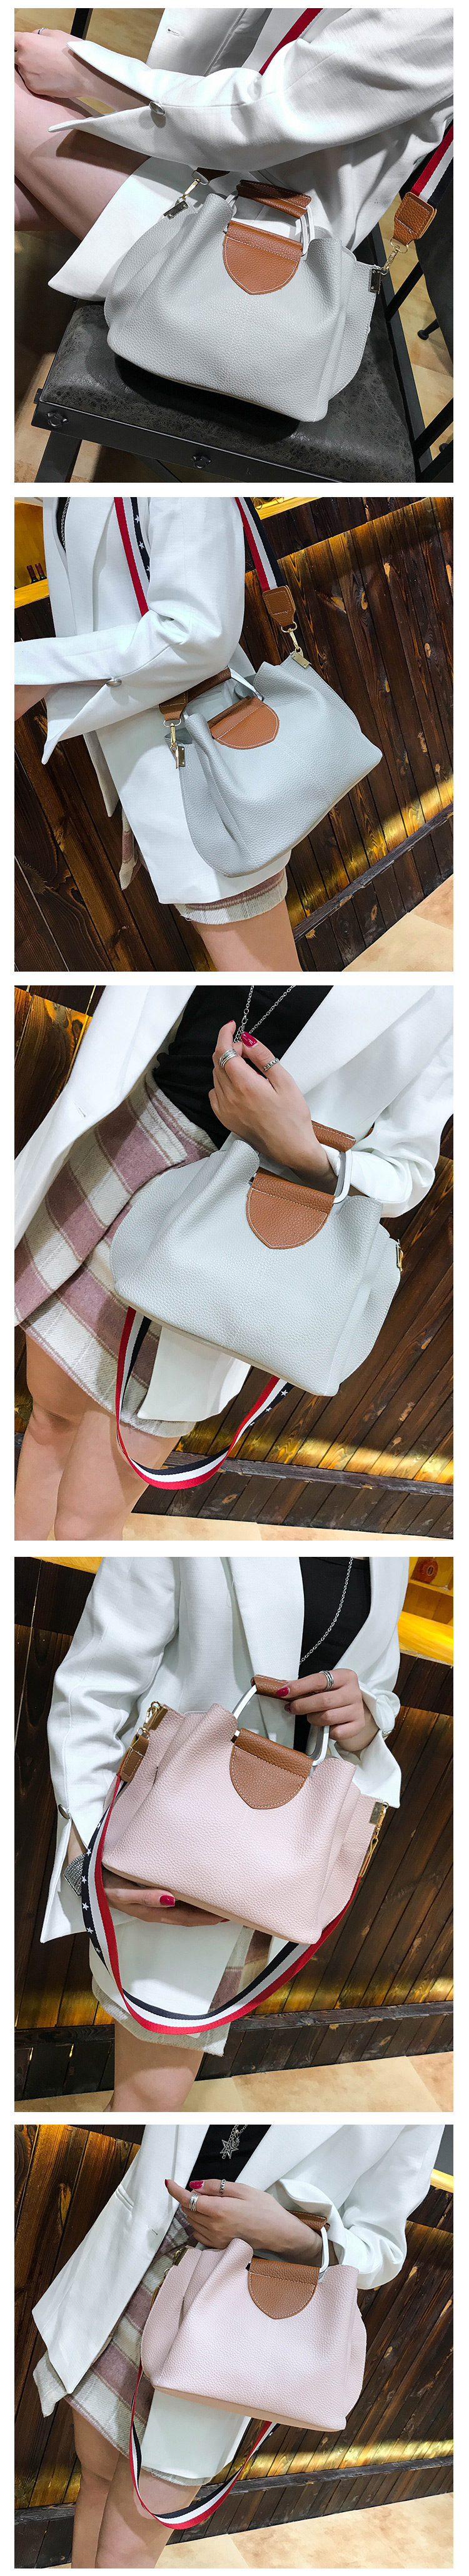 Fashion Gray Pure Color Decorated Handbag,Handbags